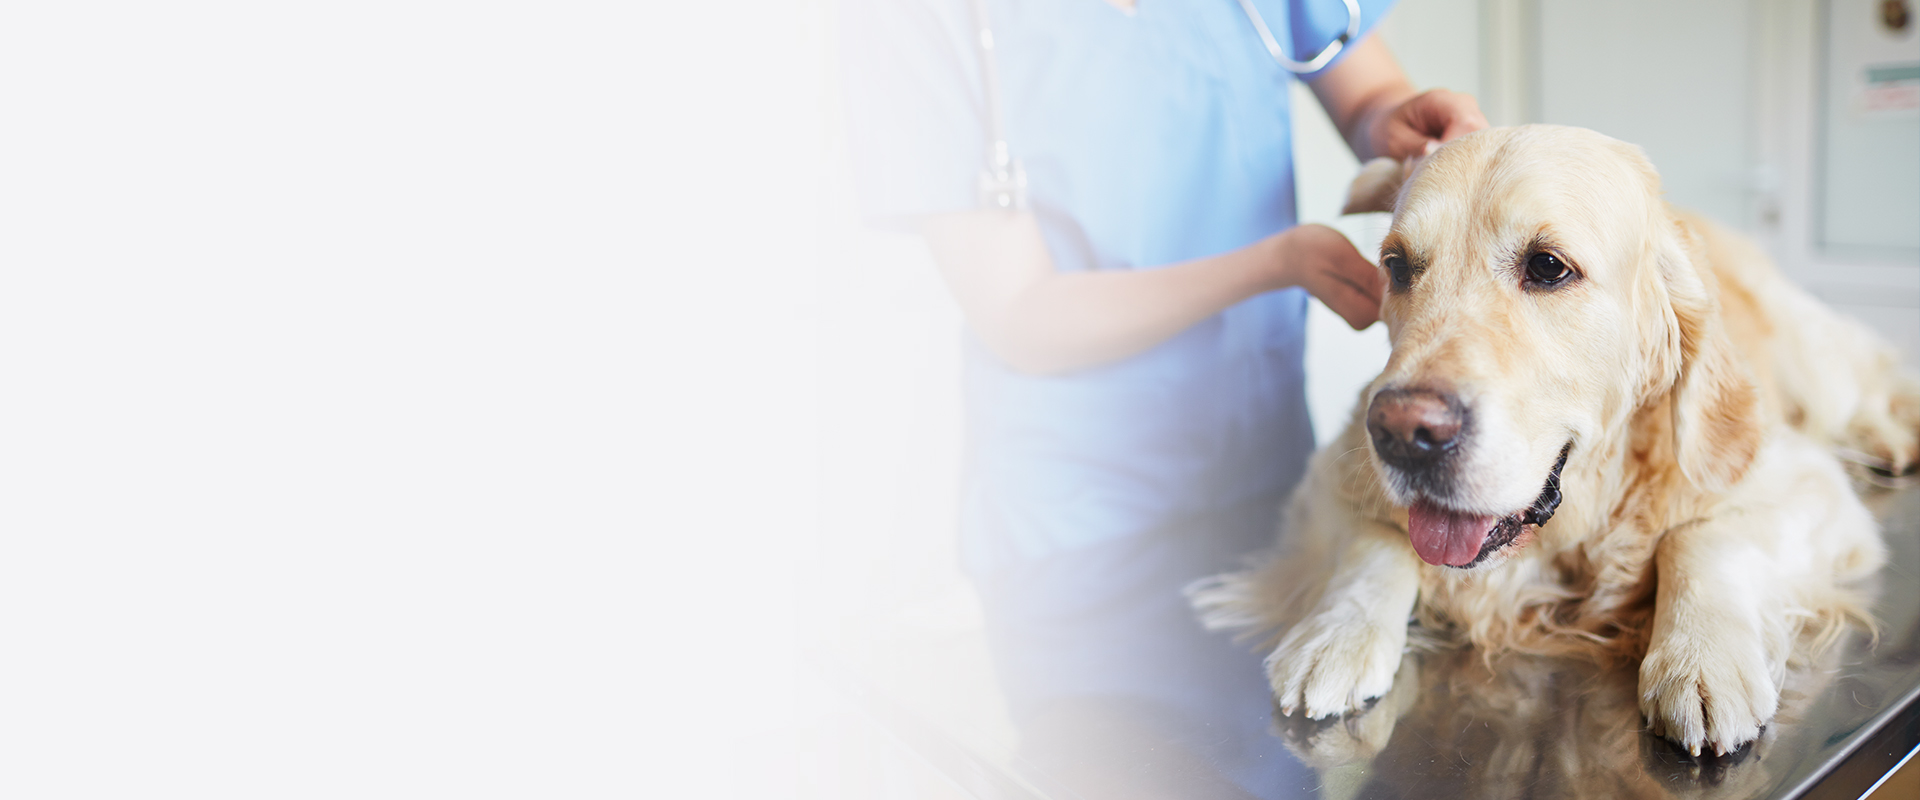 veterinaras tikrina auksaspalvio retriverio šunį